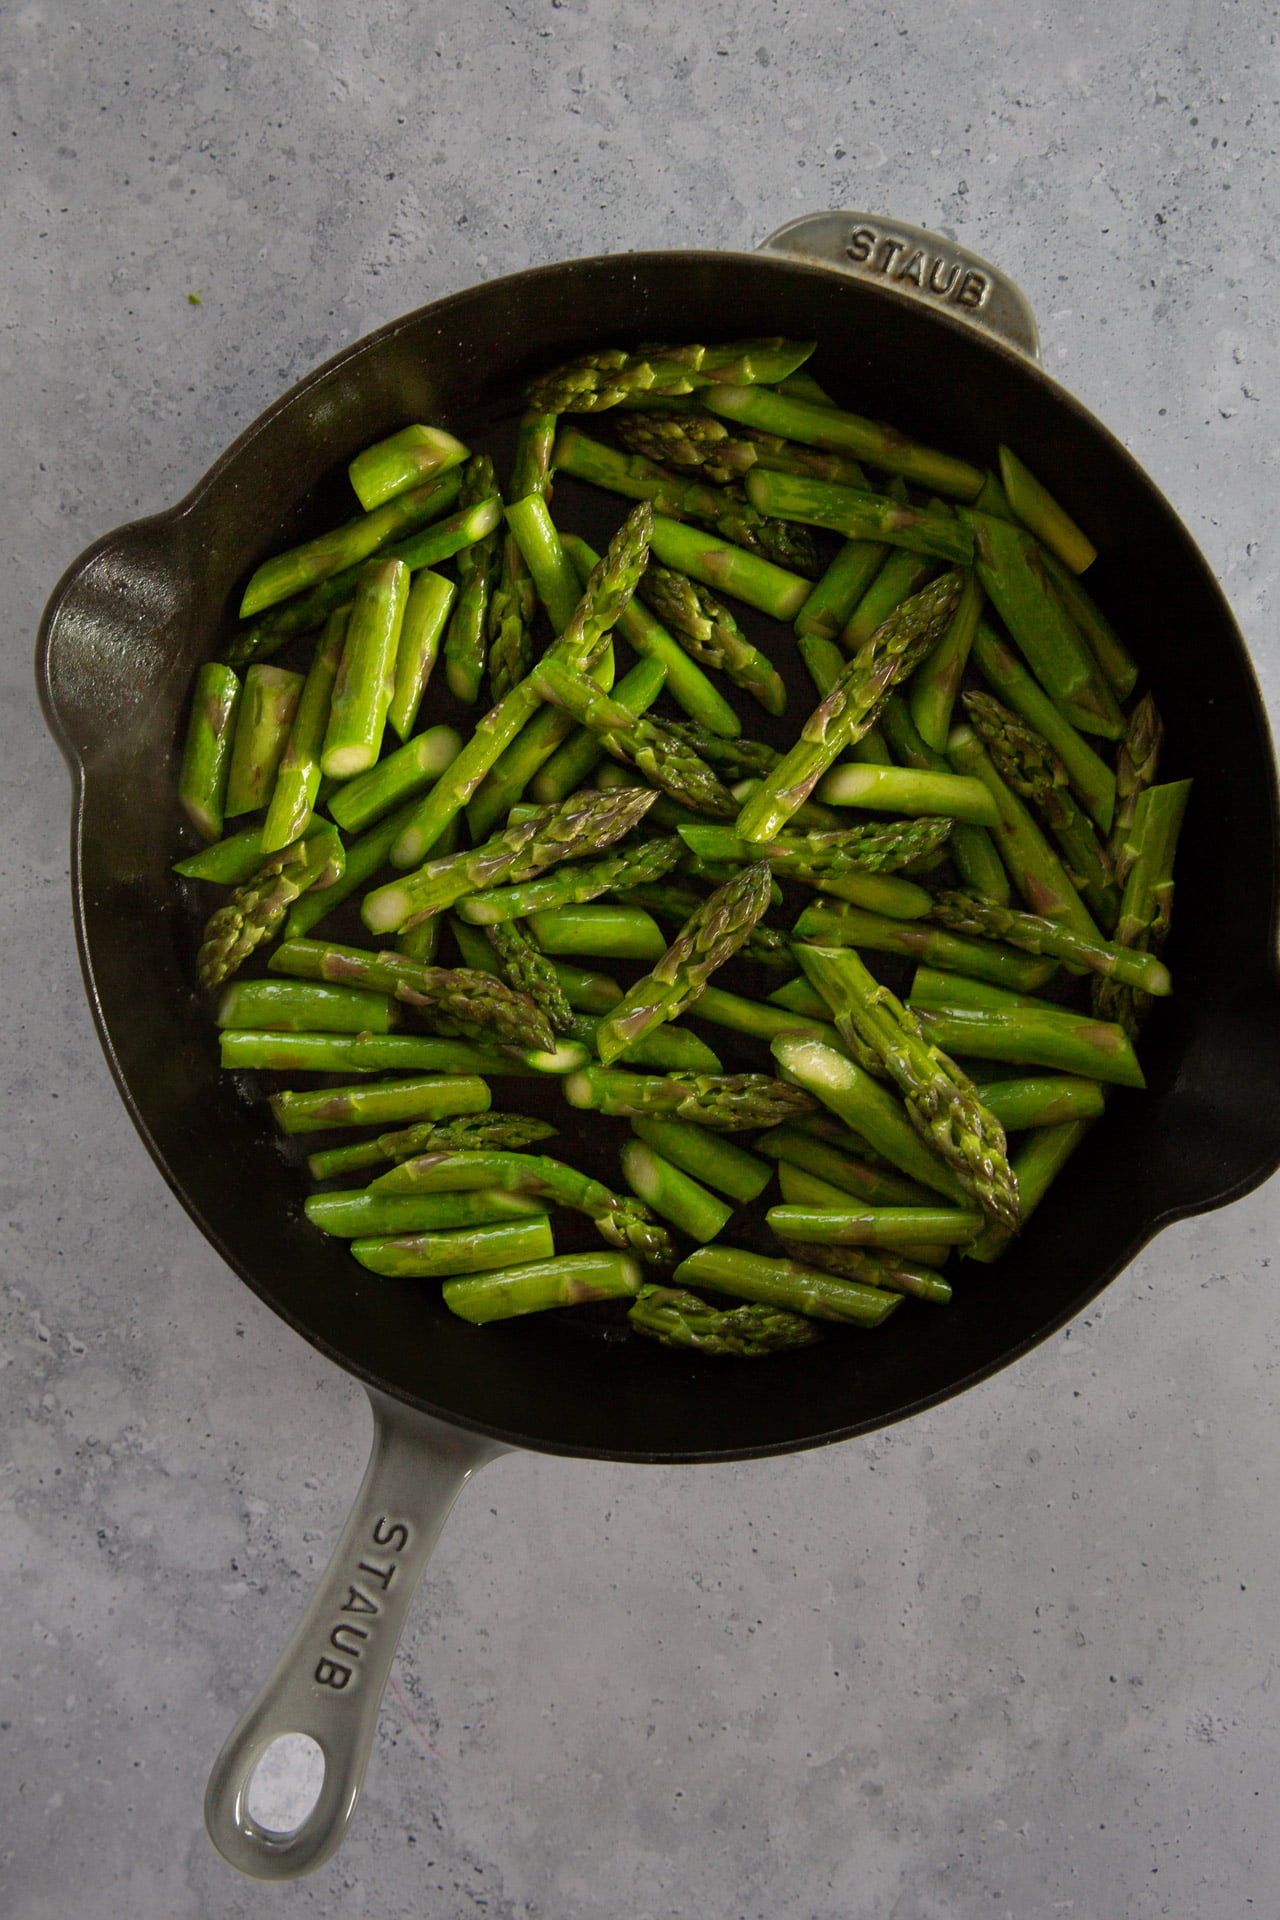 esparragos salteados suteed asparagus 9 1